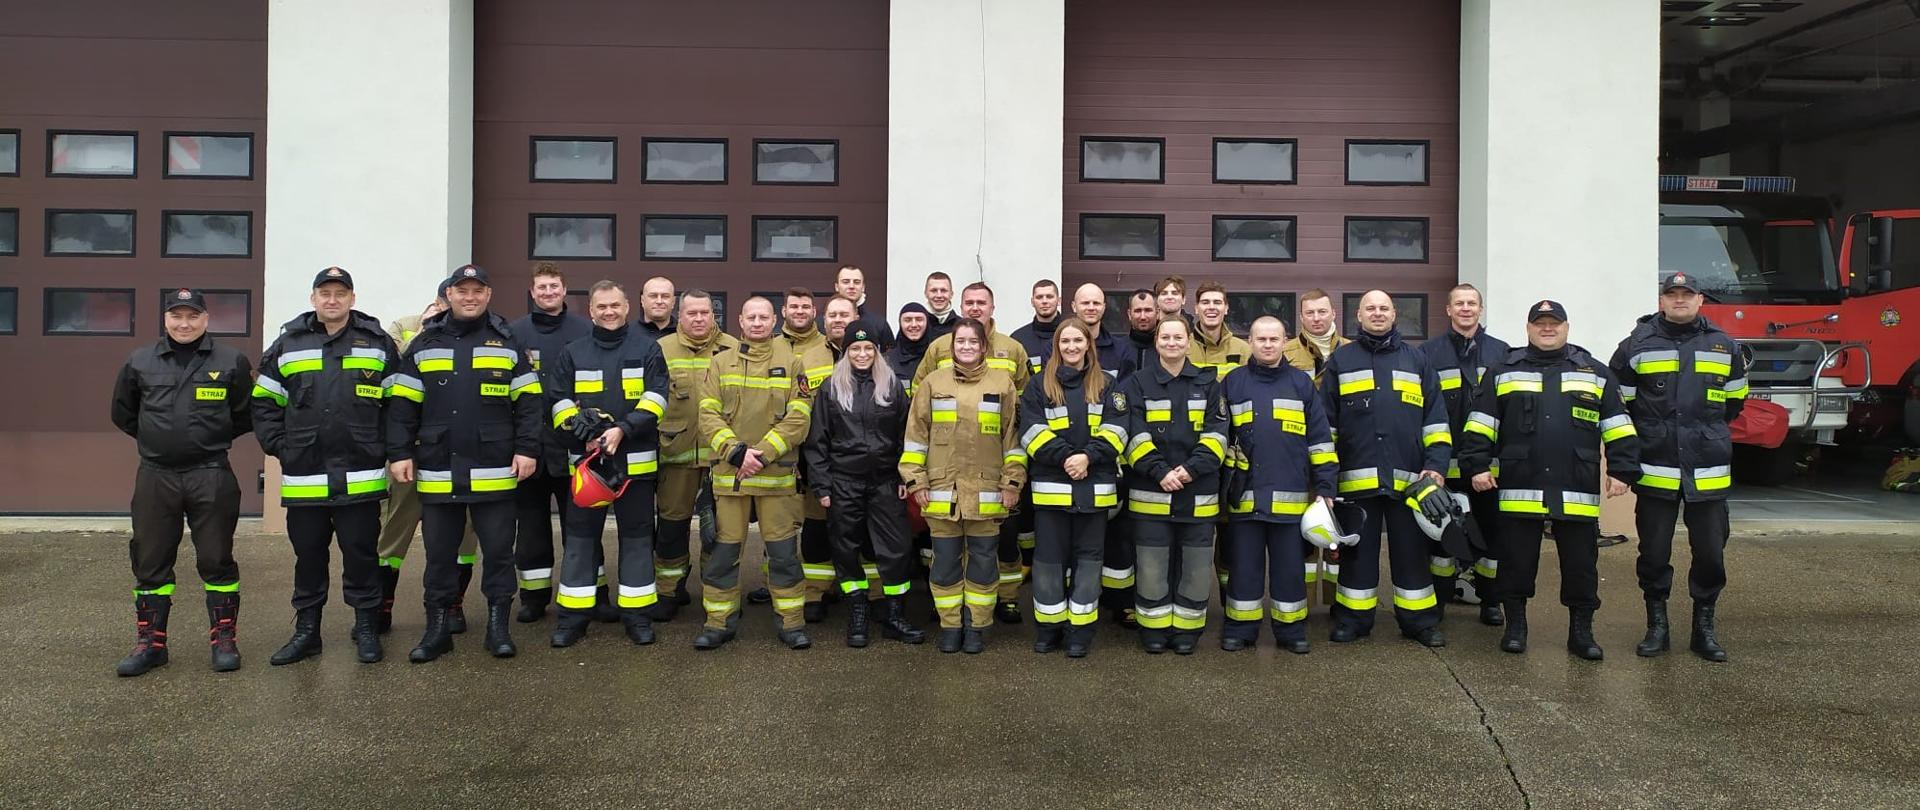 Fotografia przedstawia nowych strażaków ochotników po zdaniu egzaminów kursu podstawowego w asyście funkcjonariuszy z Komendy Powiatowej Państwowej Straży Pożarnej w Malborku.